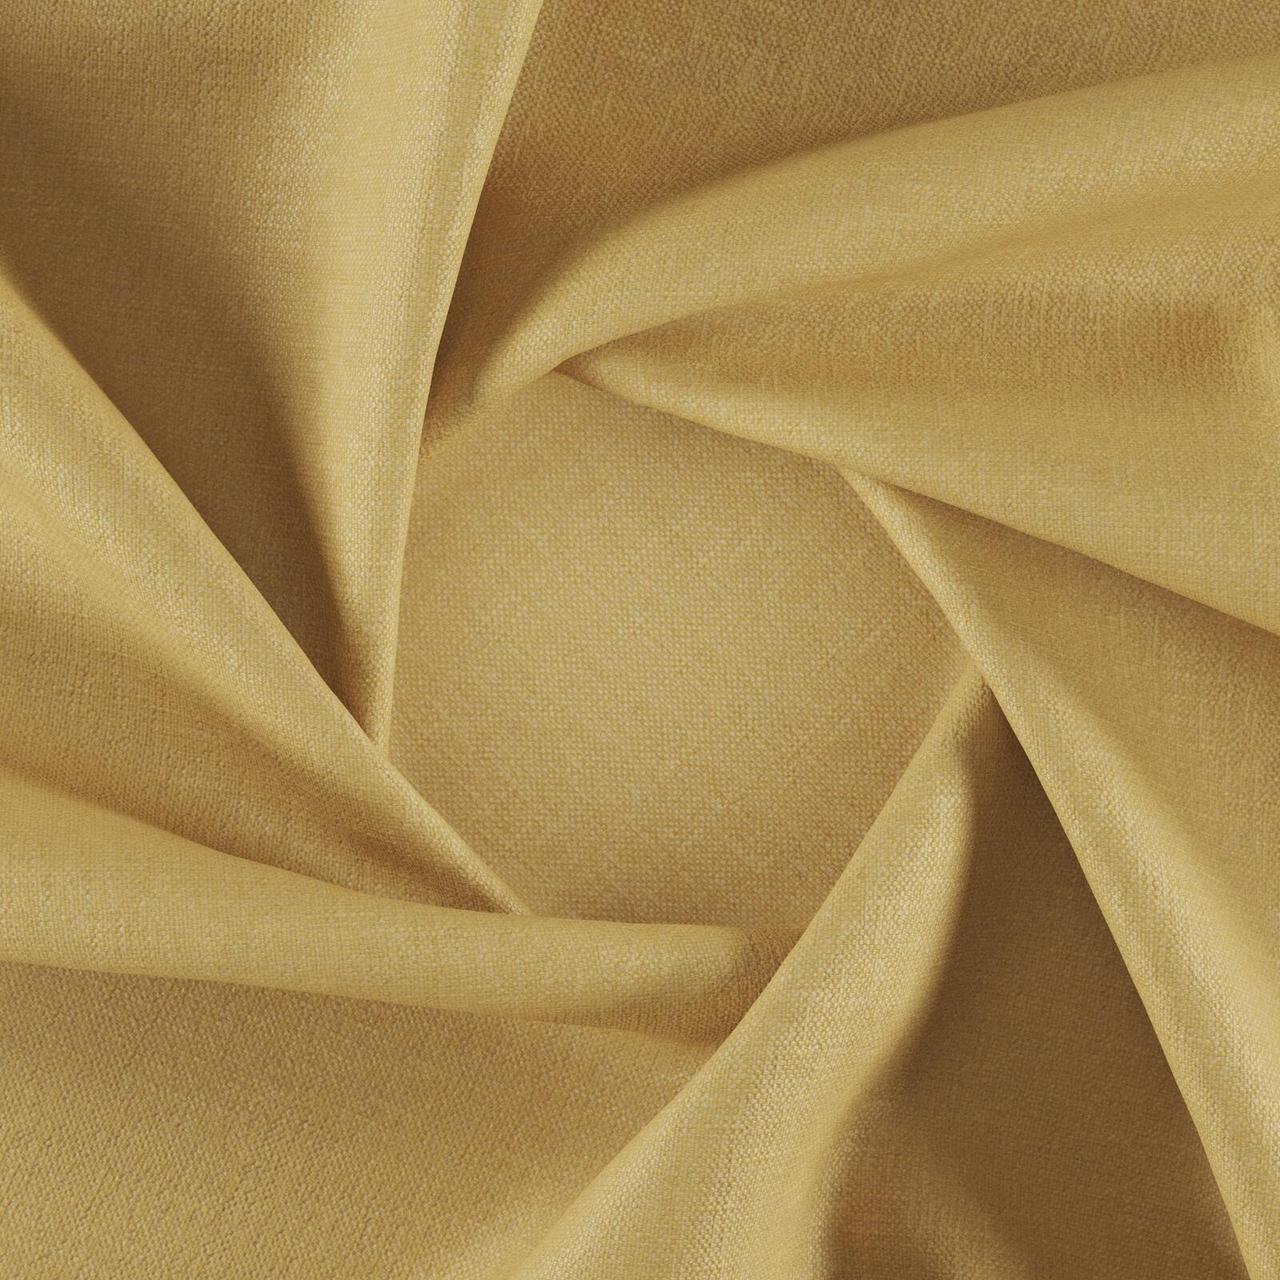 Тканина для перетяжки м'яких меблів шеніл Перфекто (Perfecto) світло-жовтого кольору